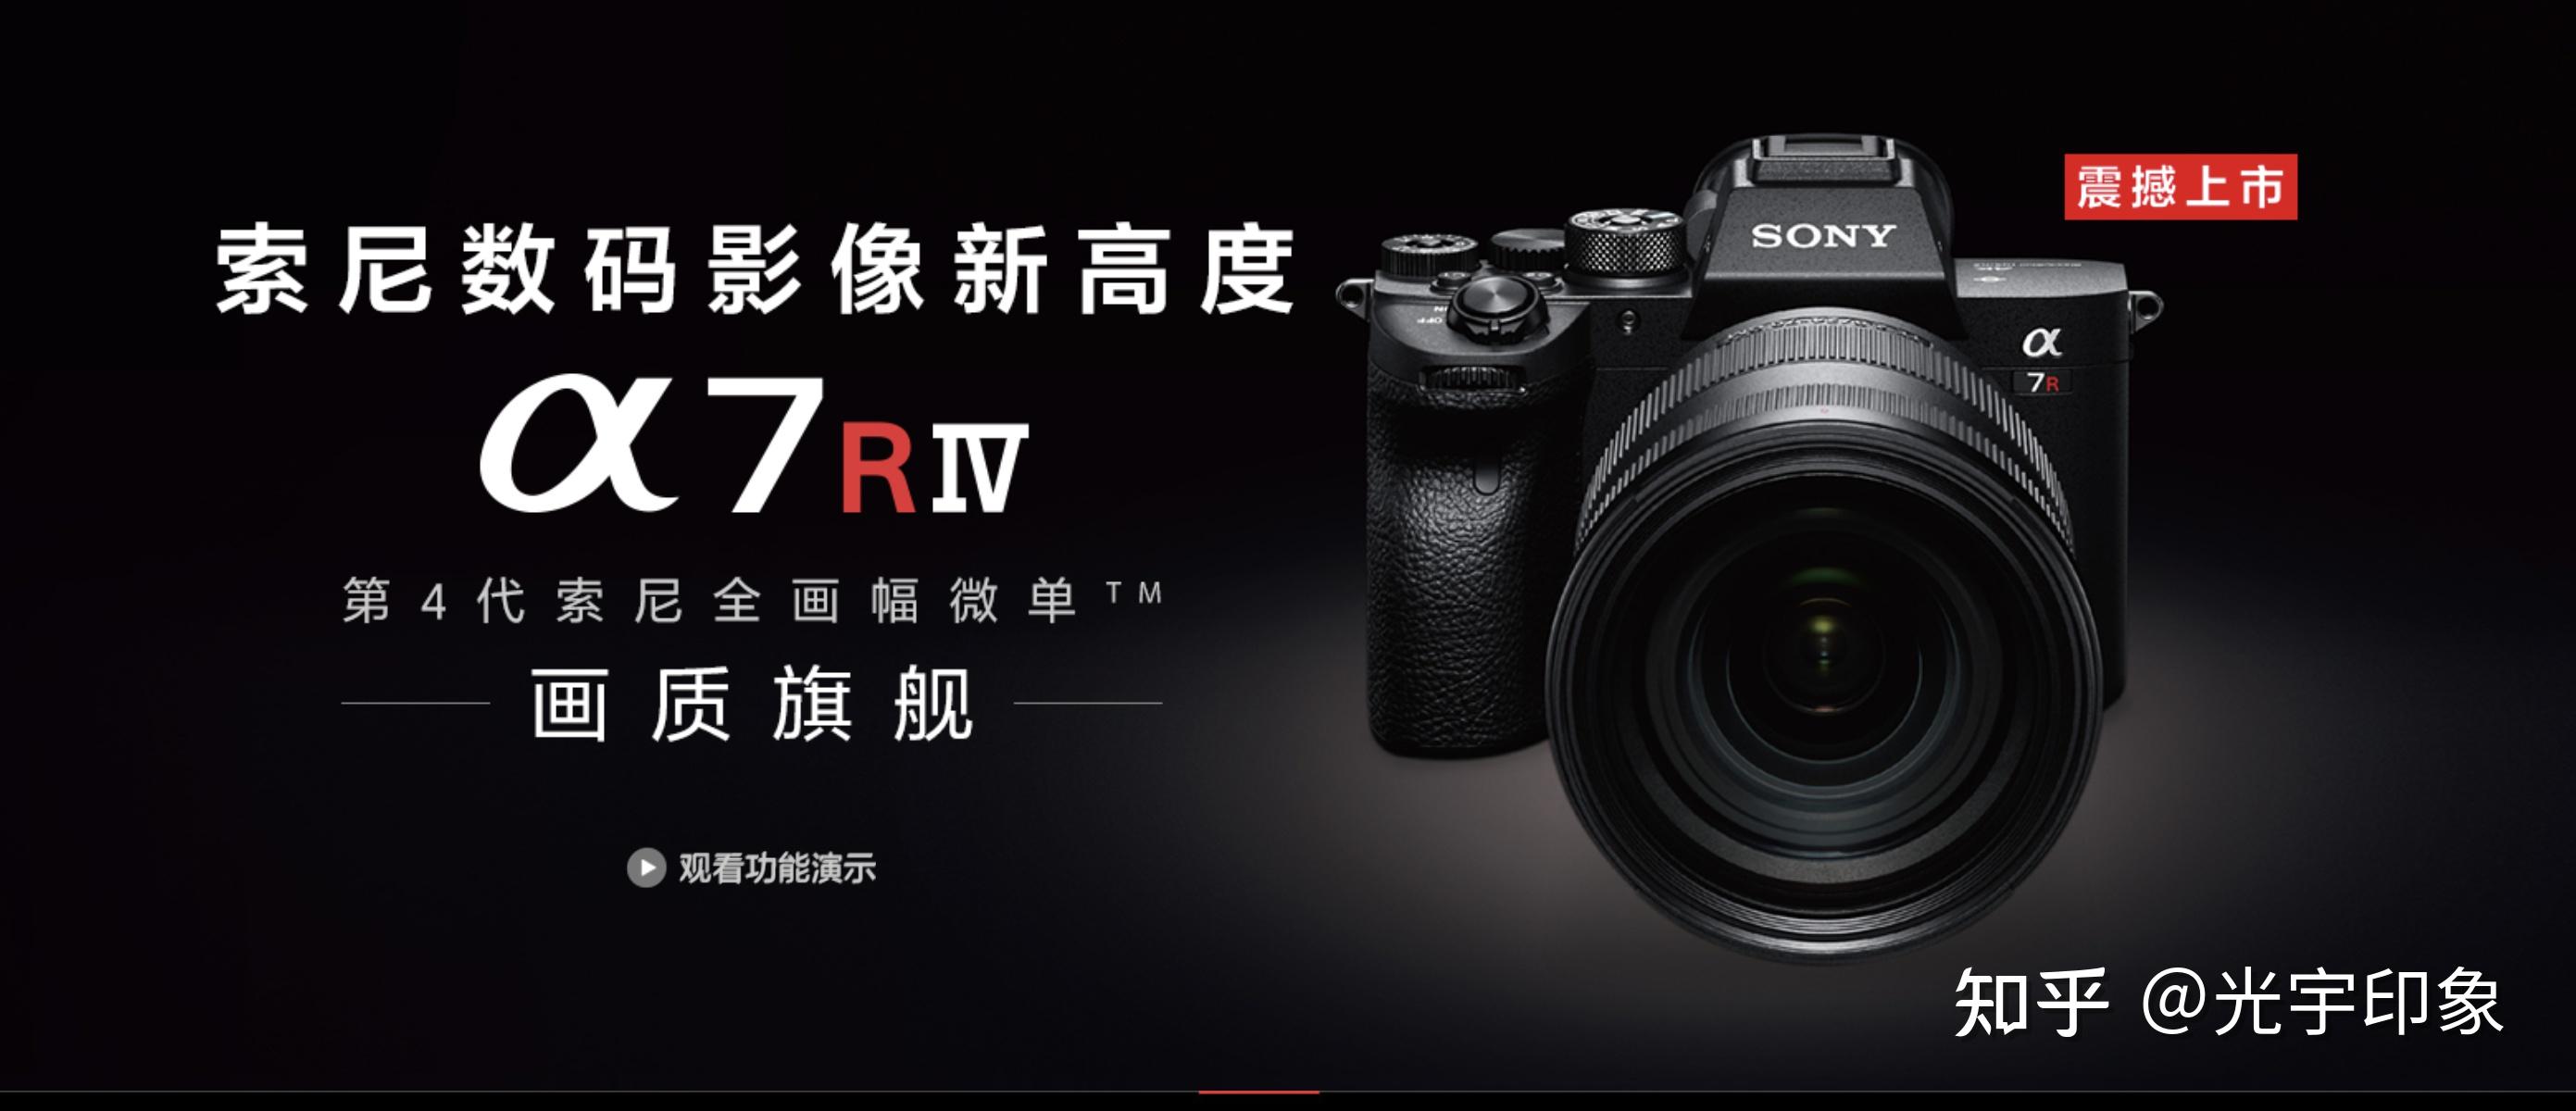 2019年7月索尼发布了新一代微单r系列旗舰相机a7r4,a7r4最吸引人的